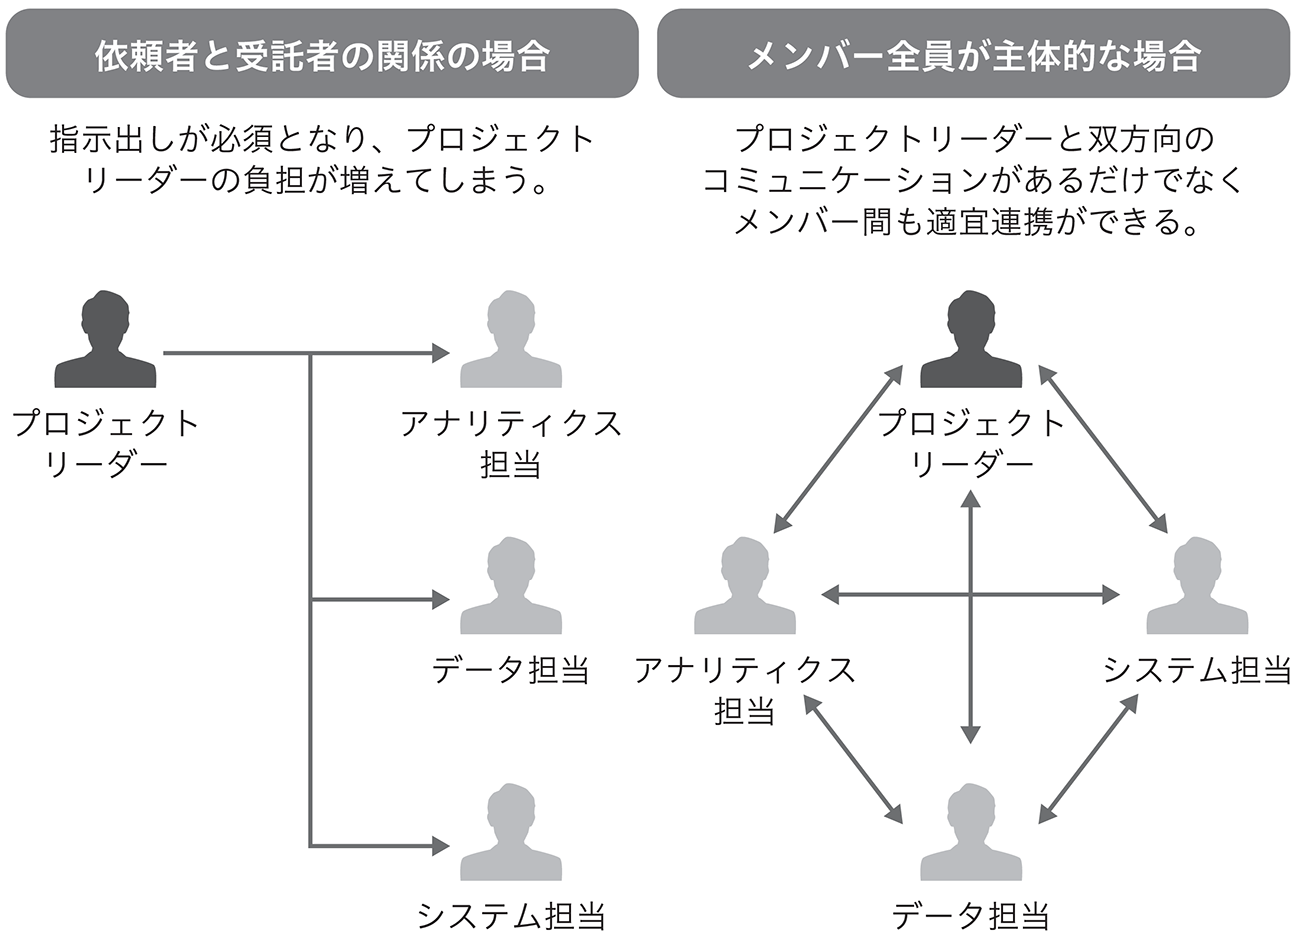 図1.2.3　プロジェクトリーダーとメンバーの関係性